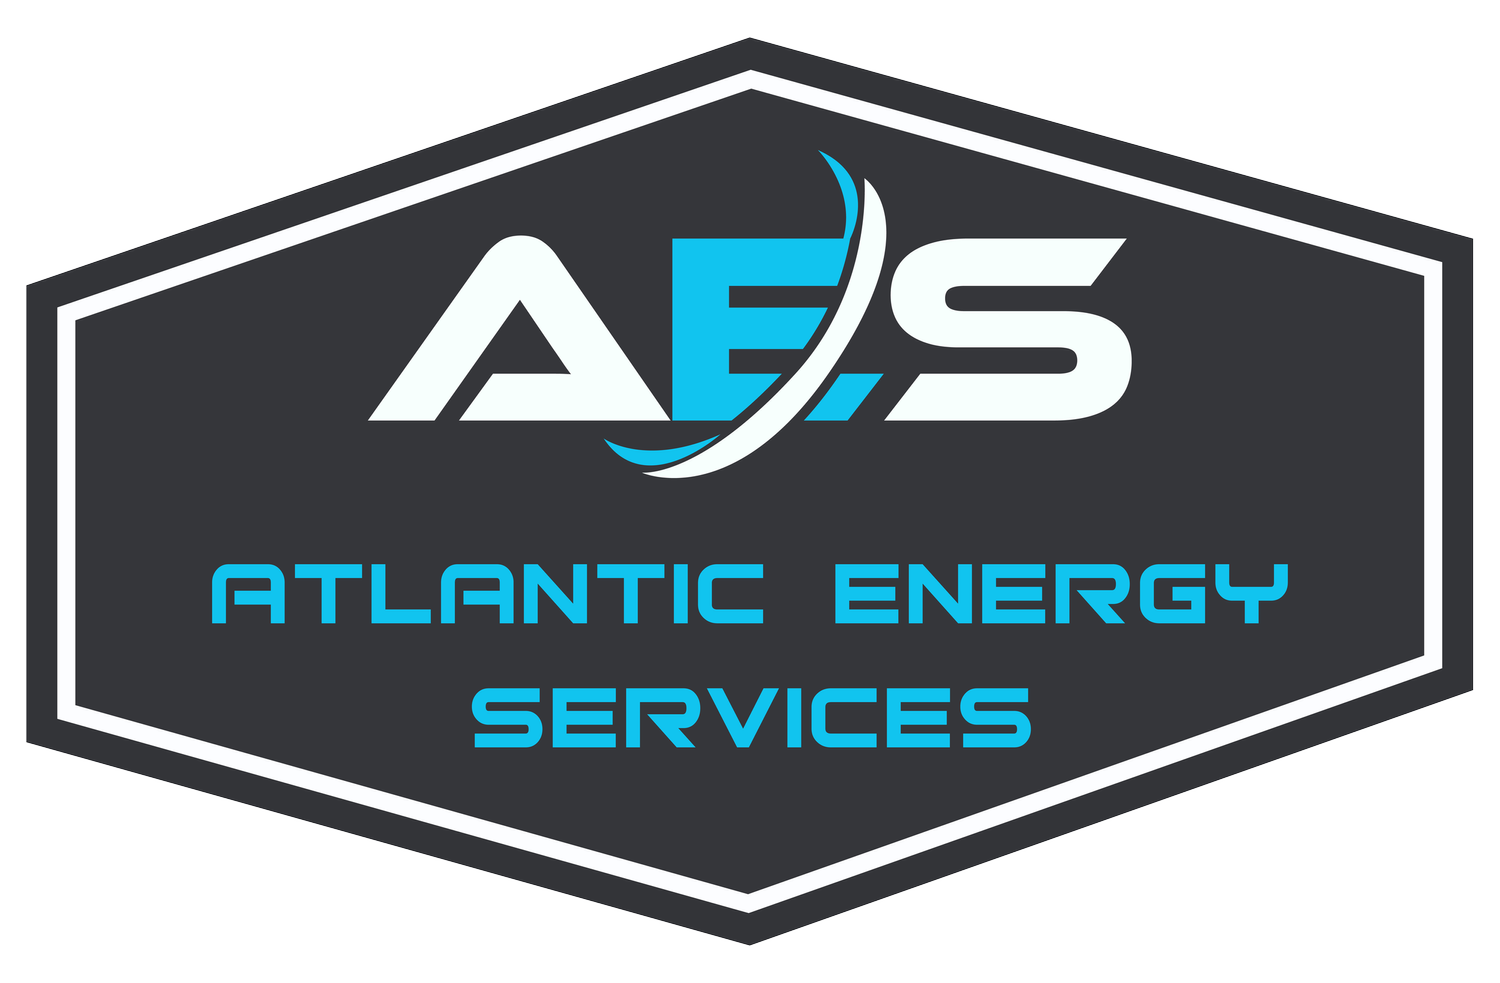 Atlantic Energy Services